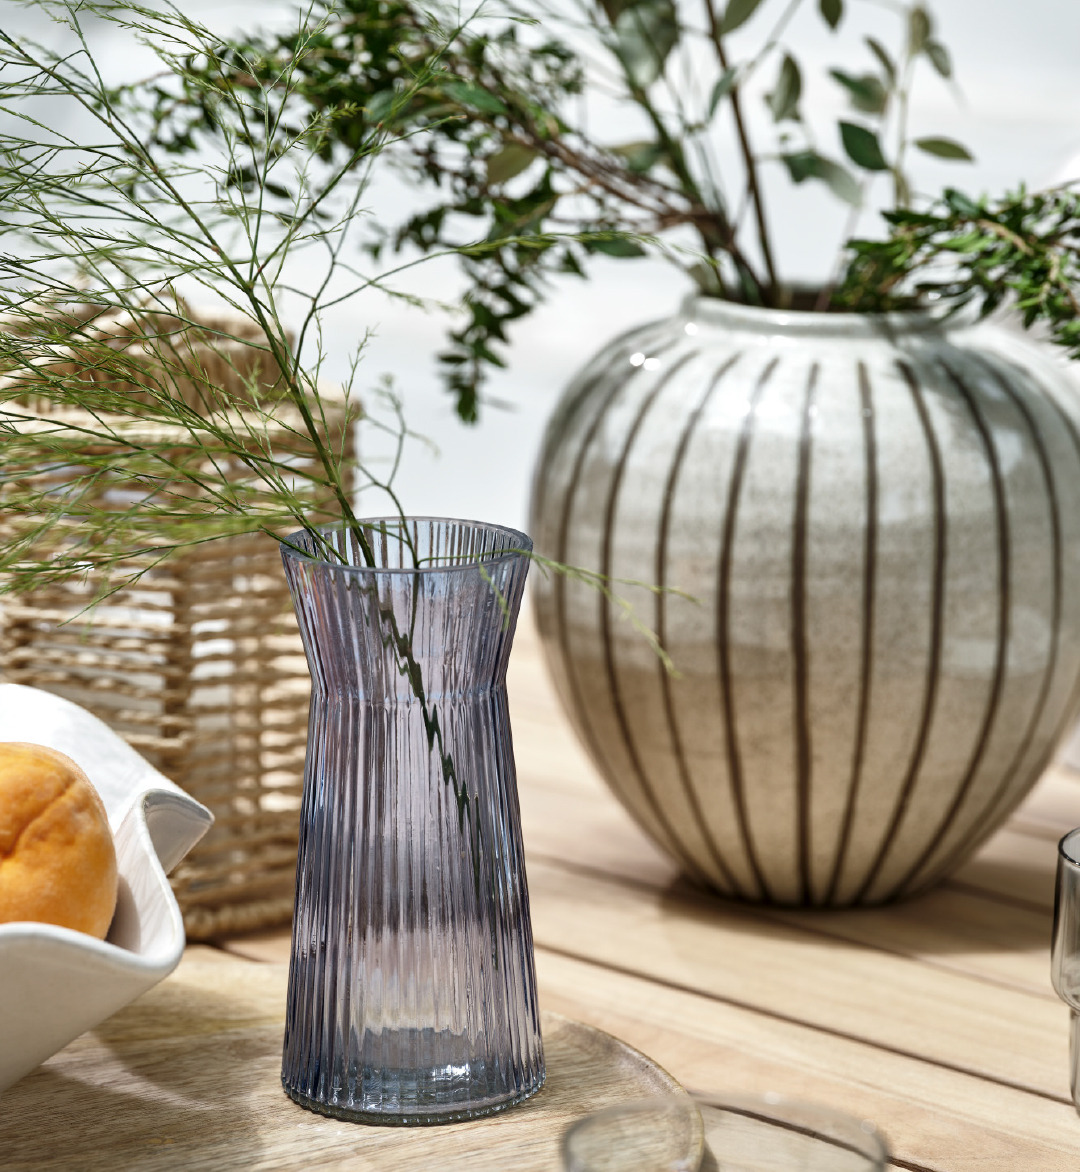 Vase HILBERT und Vase SOFUS auf Gartentisch